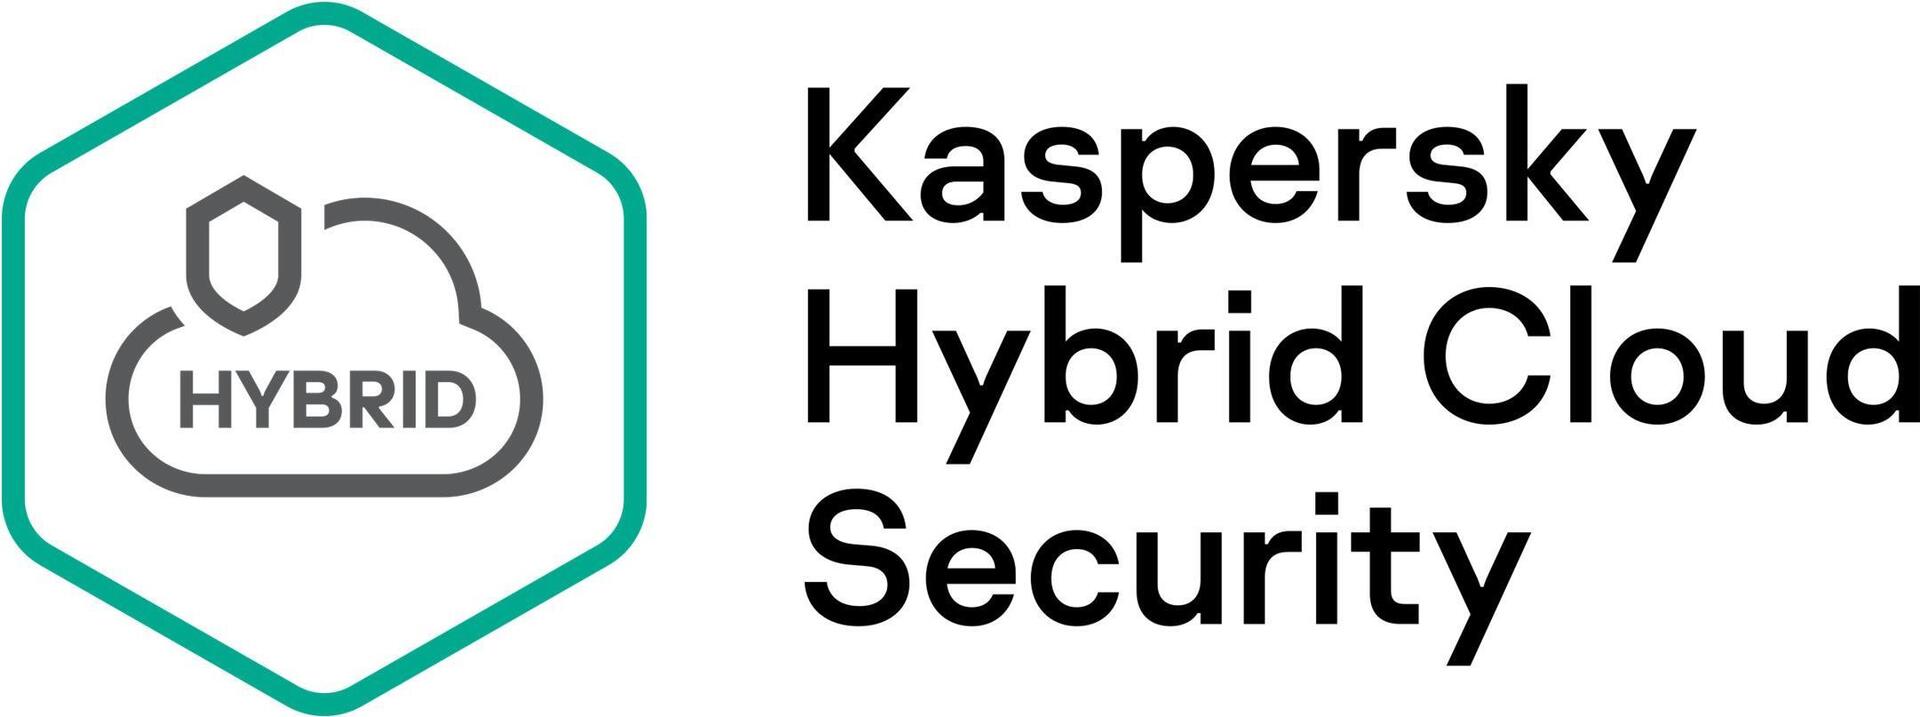 Kaspersky Hybrid Cloud Security Desktop (KL4155XATTD)